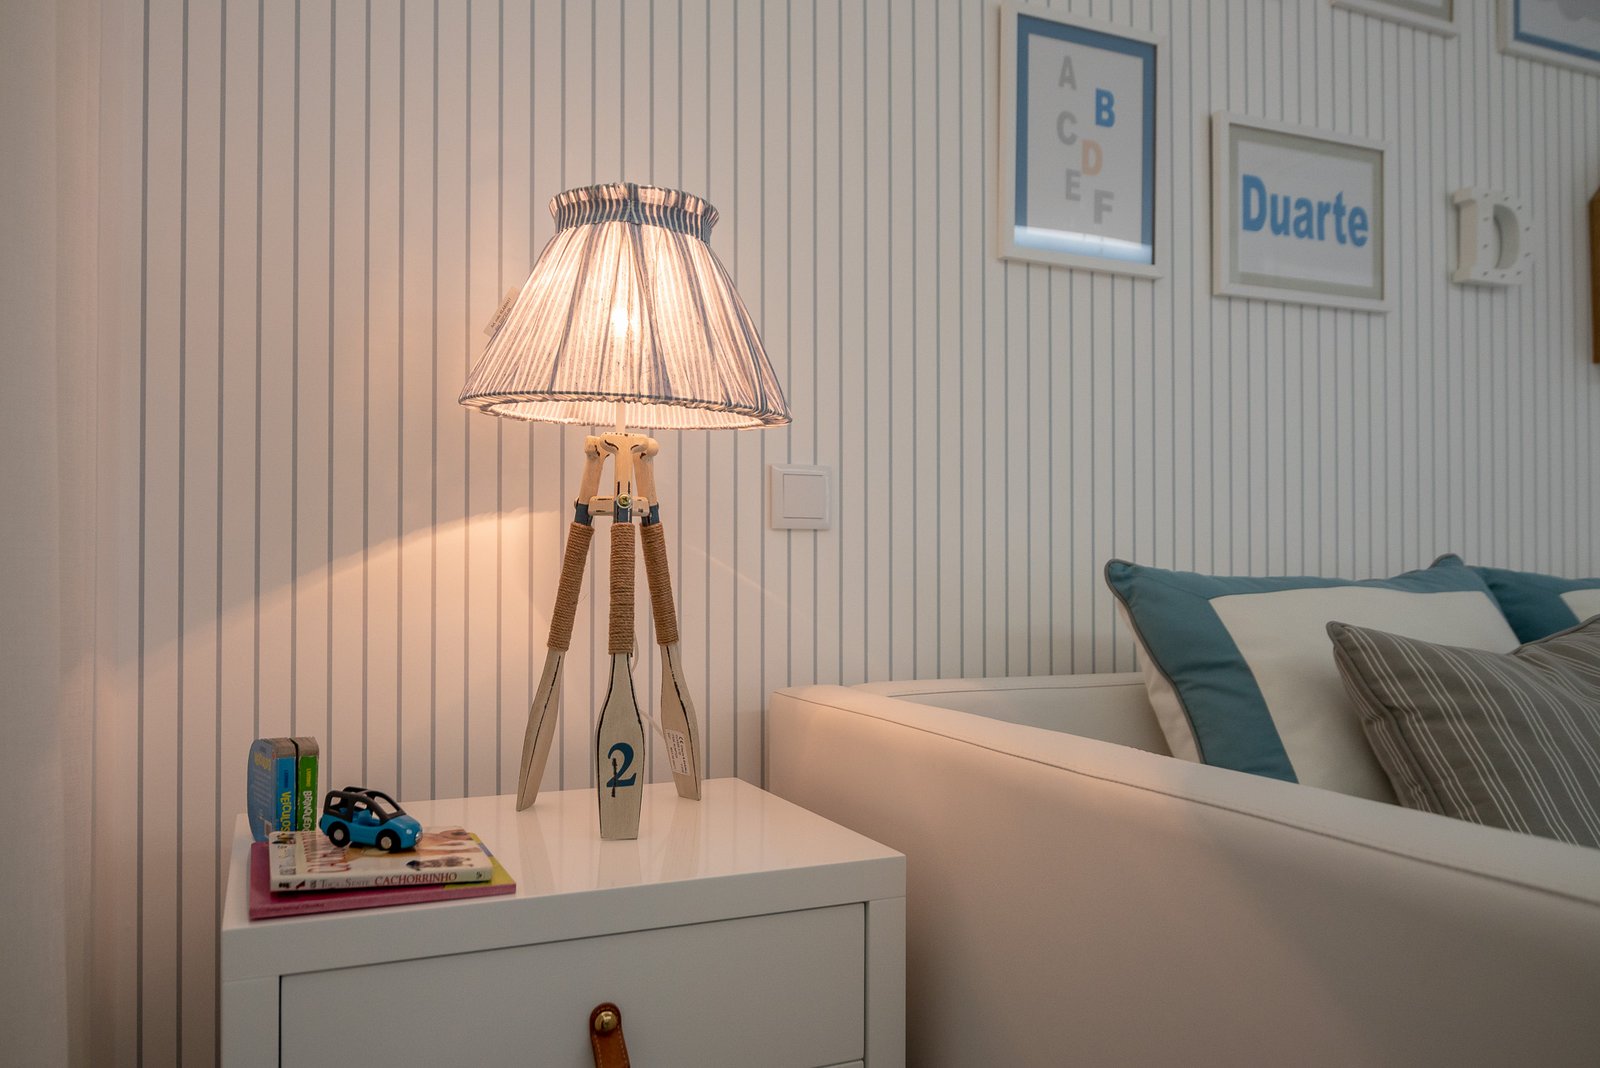 Ângela Pinheiro - Decoração de Interiores - Home Design - Decoração de Interiores - Quarto Azul Marinho para Crianças